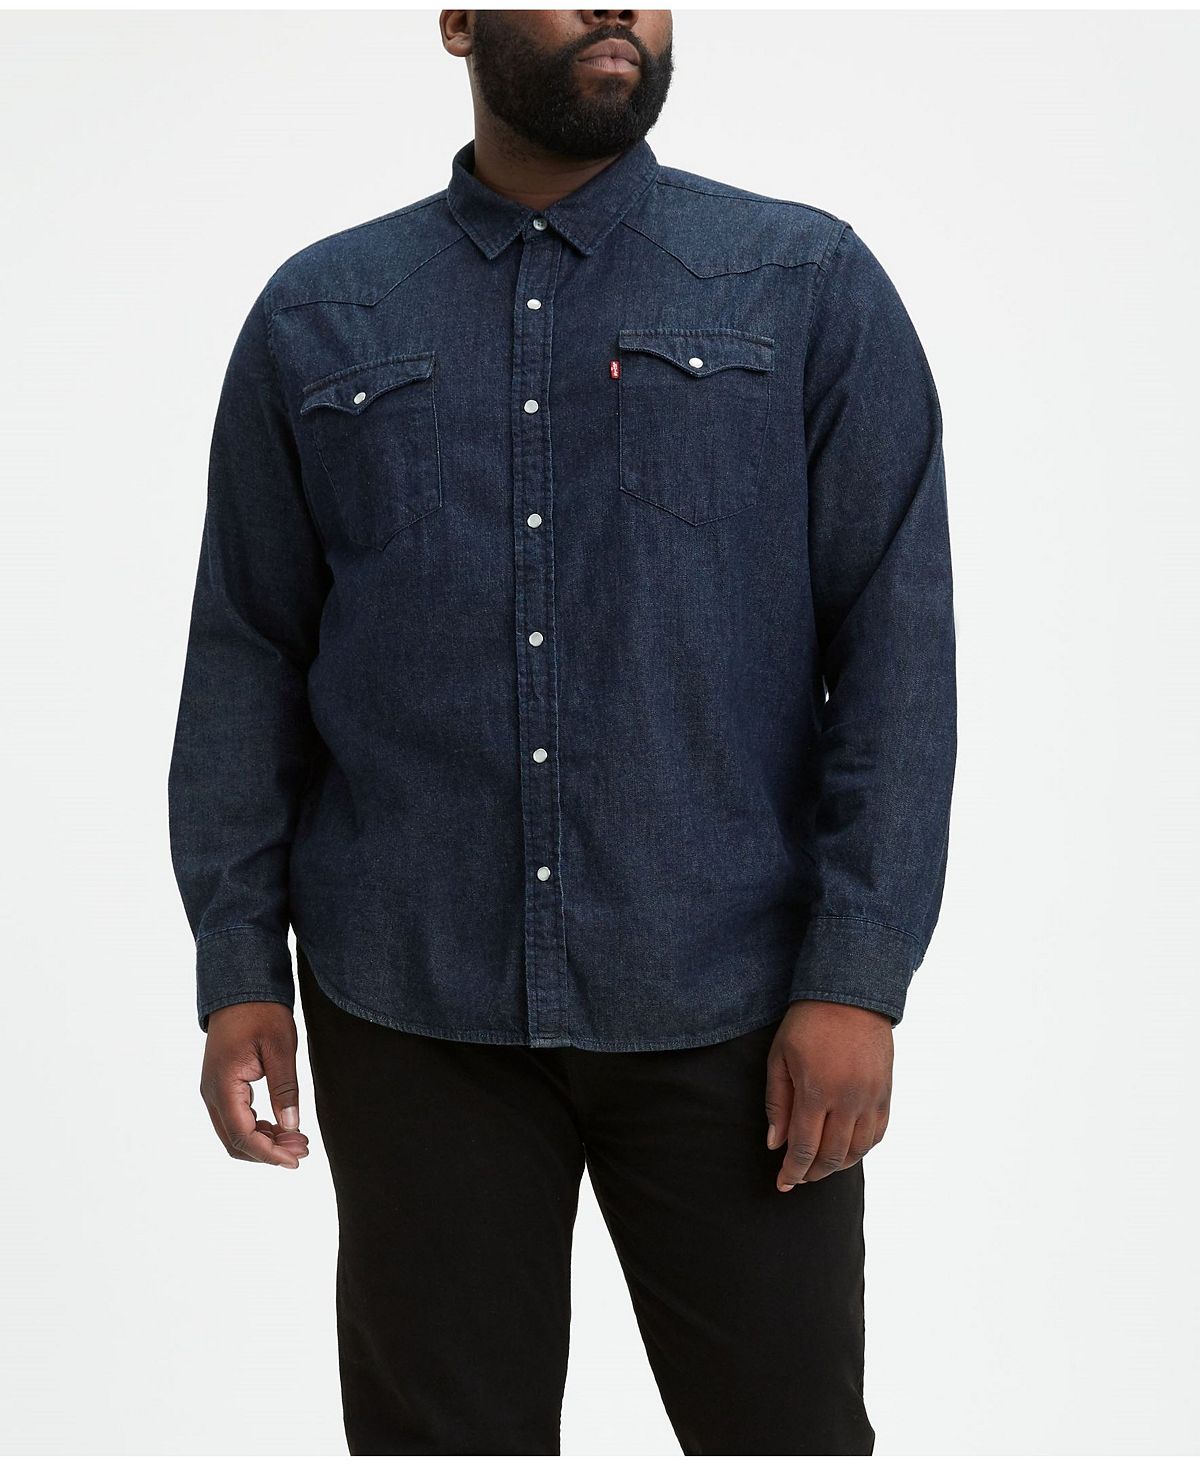 Мужская классическая джинсовая рубашка с длинным рукавом в стиле вестерн Levi's, мульти